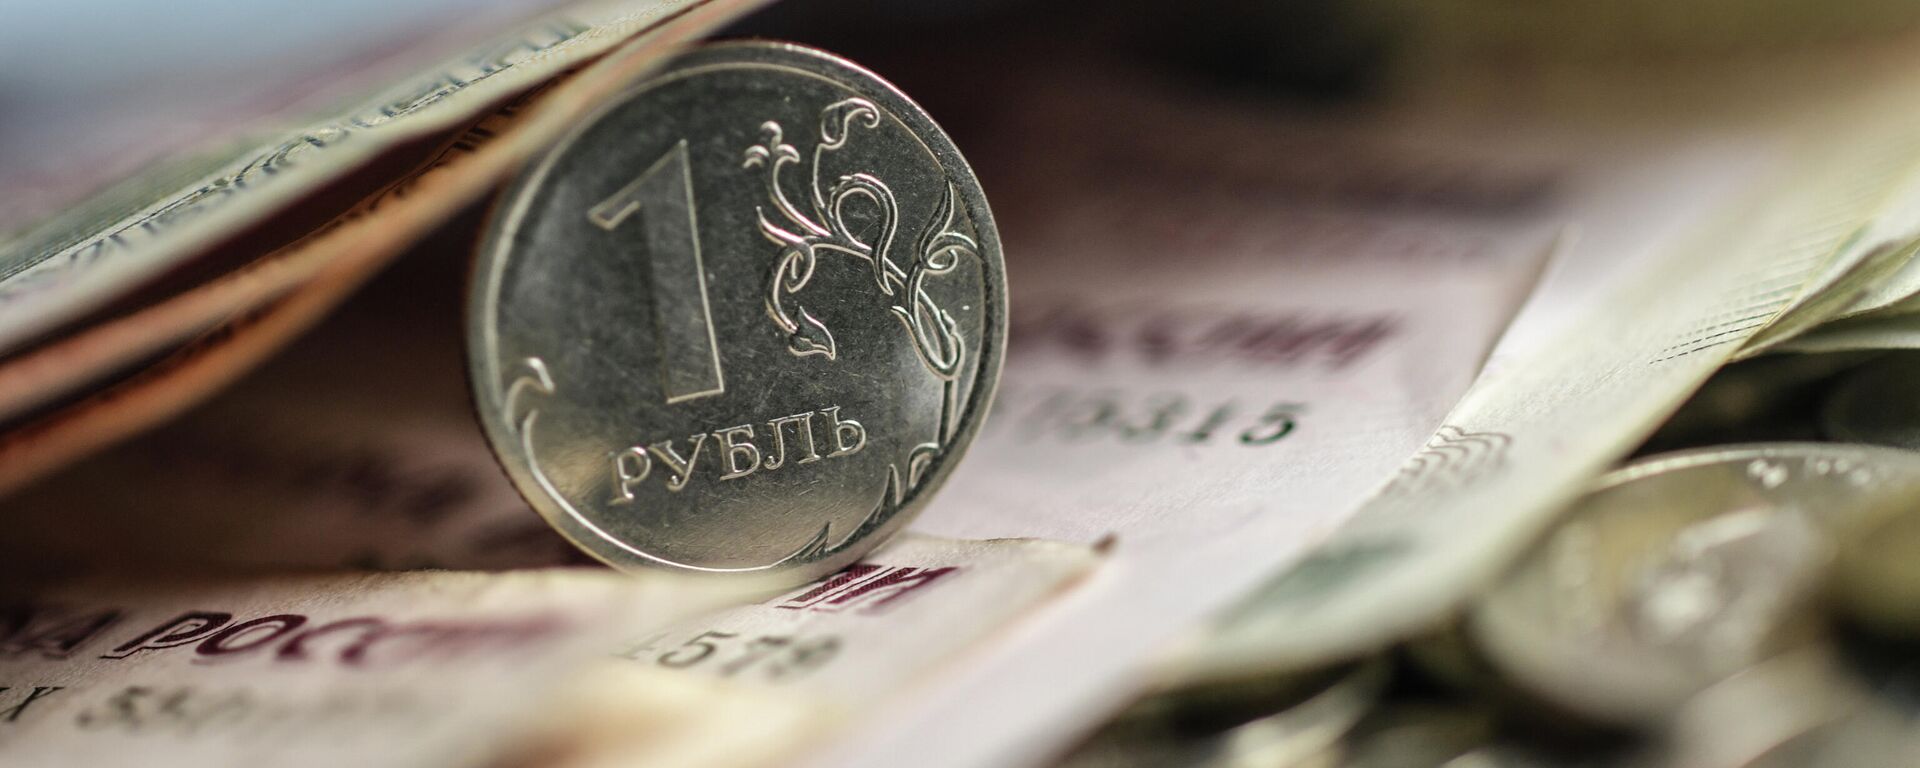 Экономист дала неожиданный ответ об общей валюте Беларуси и России  - Sputnik Беларусь, 1920, 28.10.2021